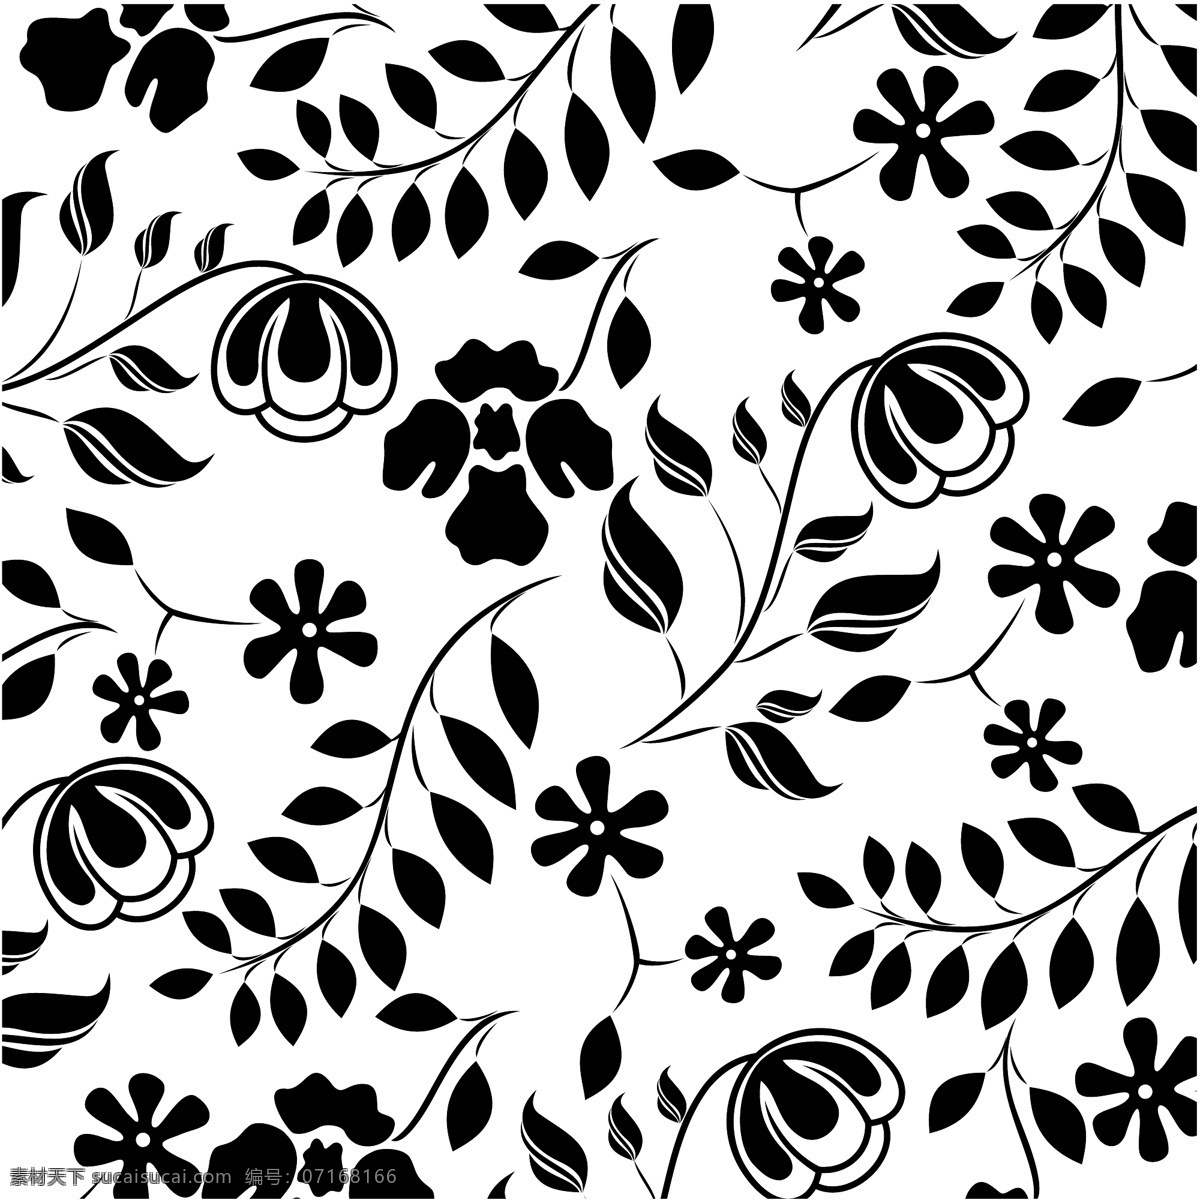 黑白 植物 四方 连续 四方连续 花朵 叶子 藤蔓 底纹 花纹花边 底纹边框 矢量